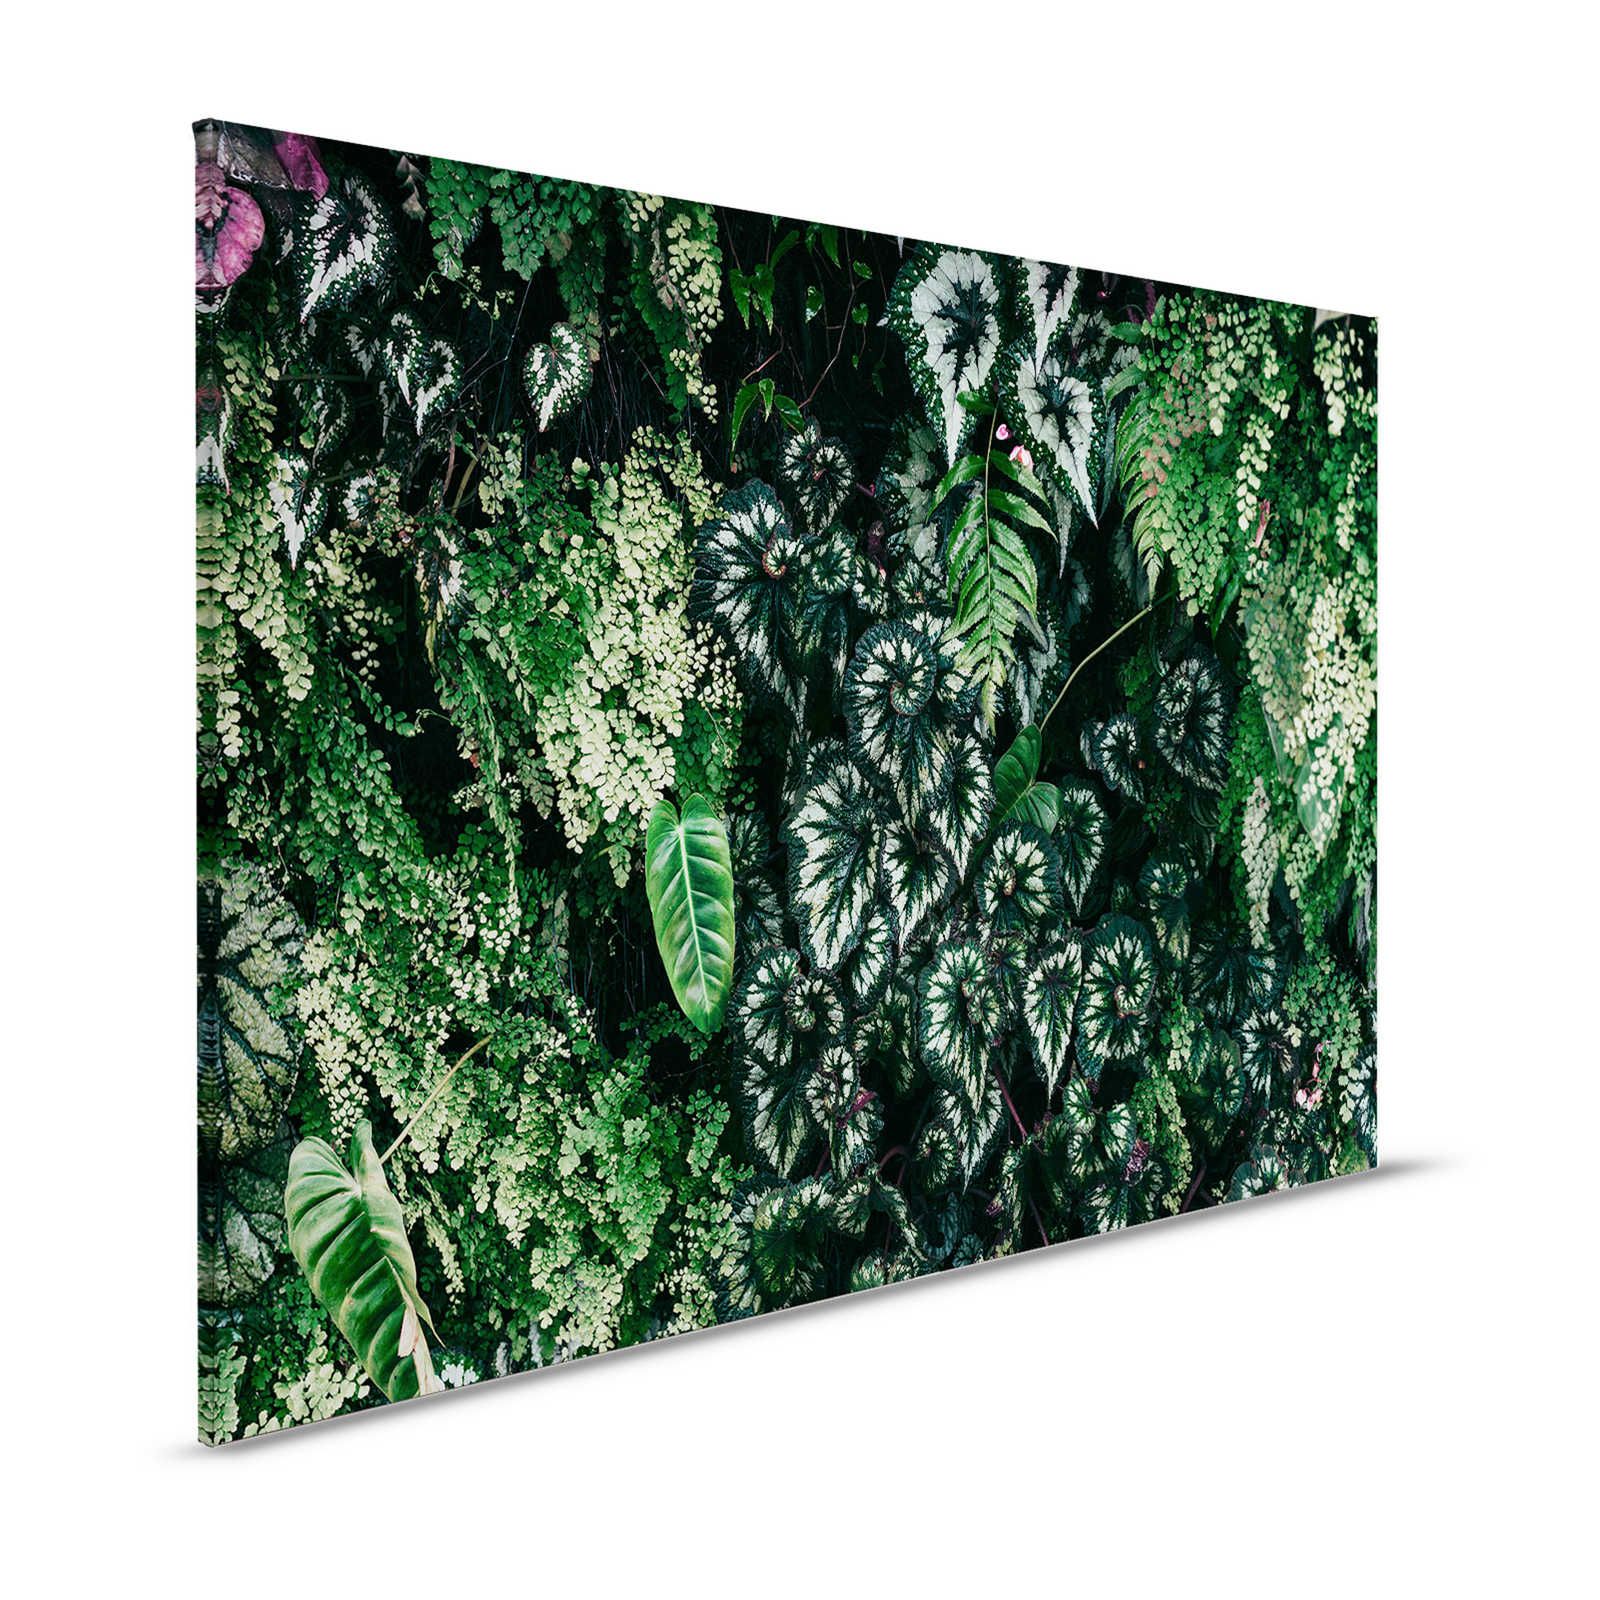 Deep Green 2 - Canvas schilderij Loofbos, varens & hangplanten - 1.20 m x 0.80 m
